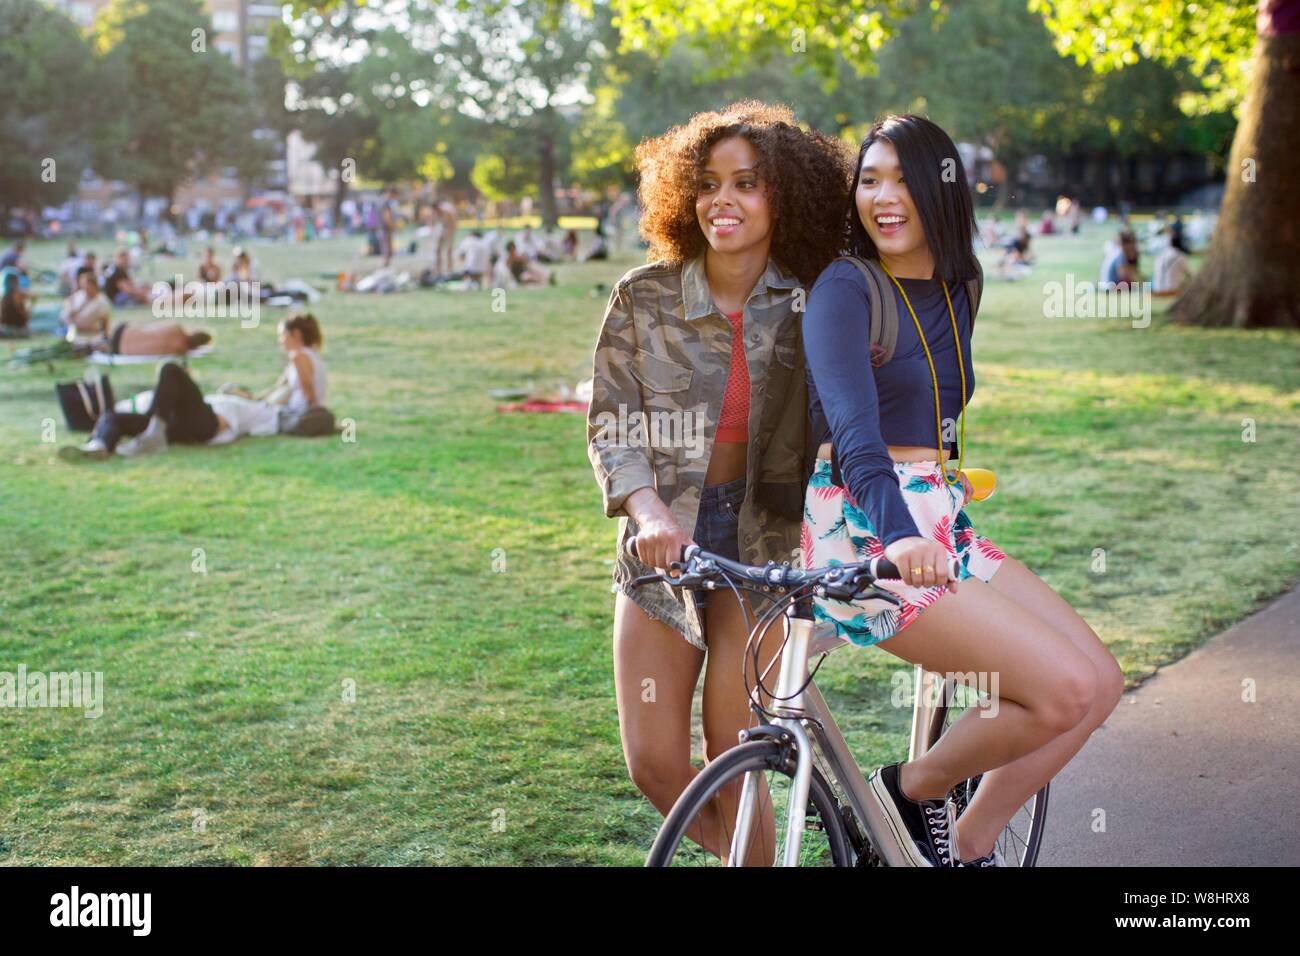 Dos mujeres jóvenes en el parque, sentado sobre la bicicleta. Foto de stock